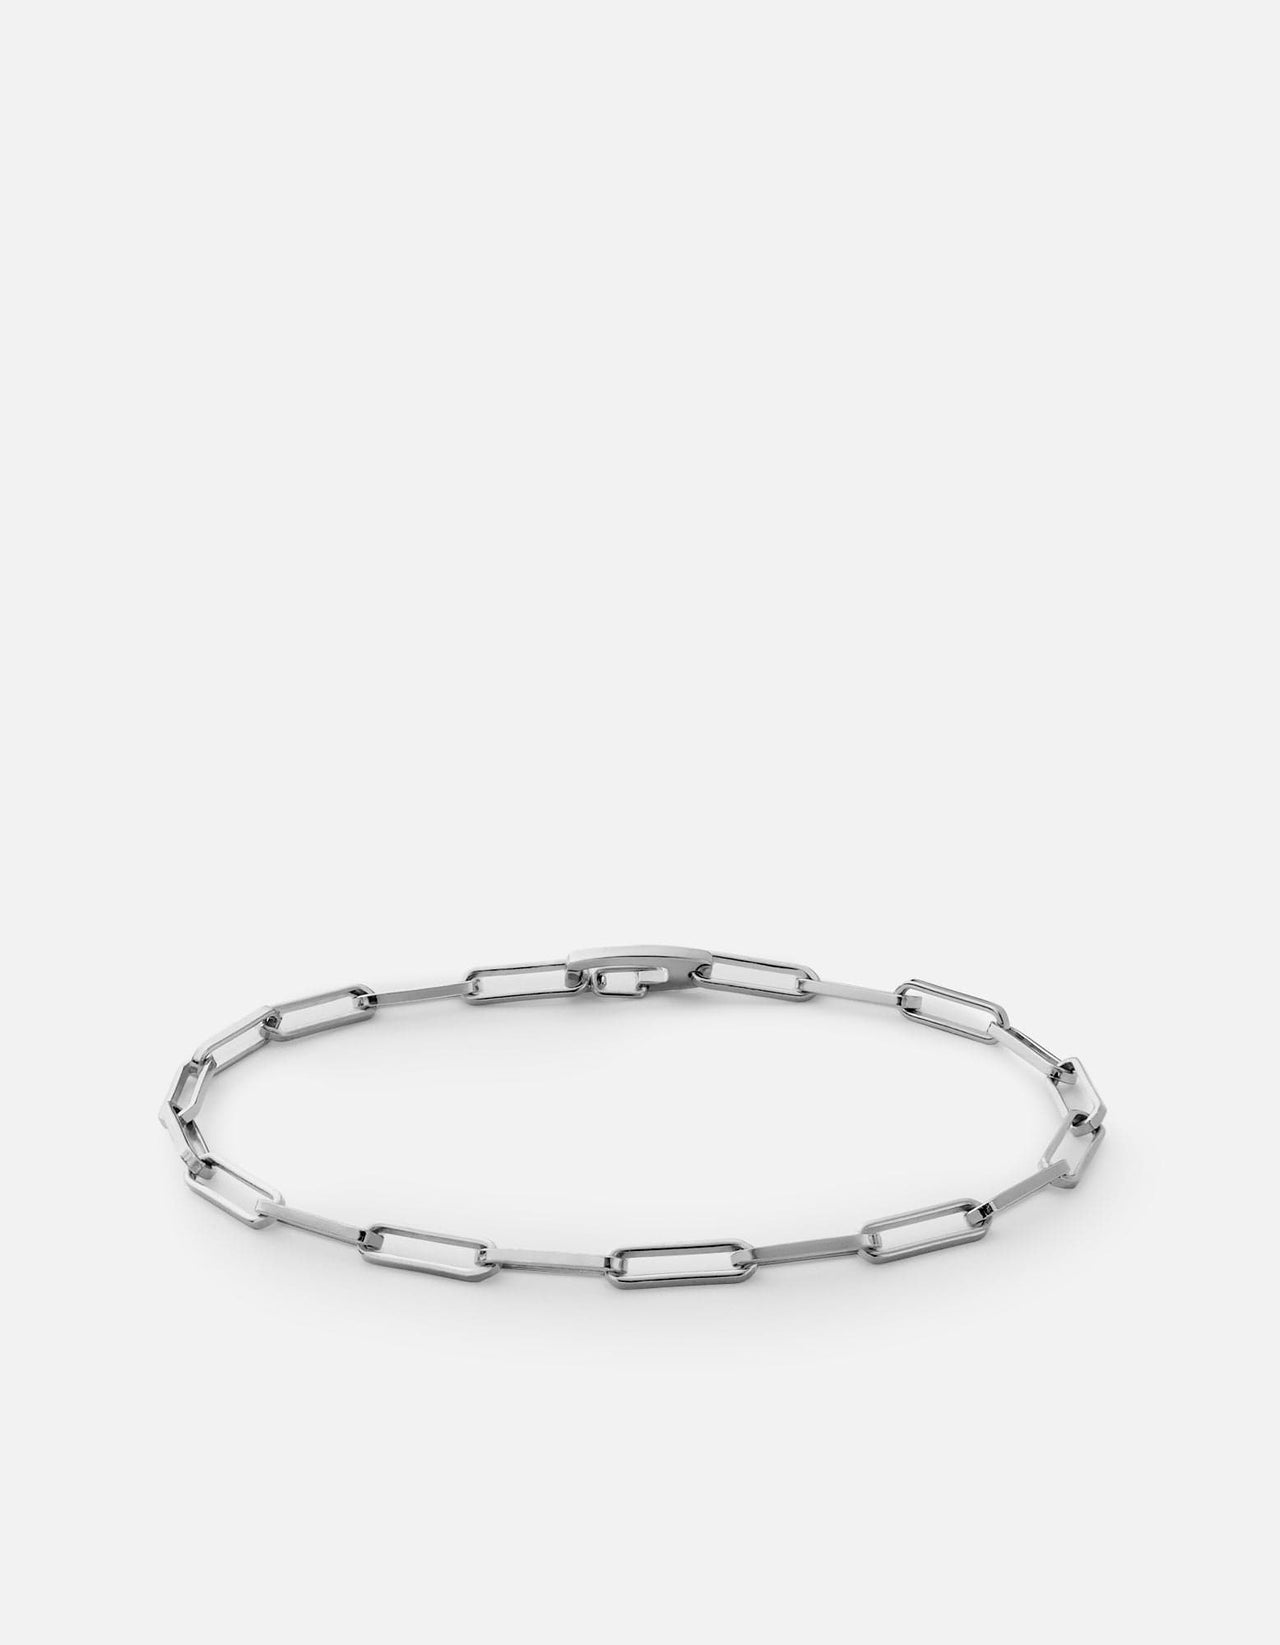 Miansai Men's Clip Volt Link Bracelet, Sterling Silver, Size M